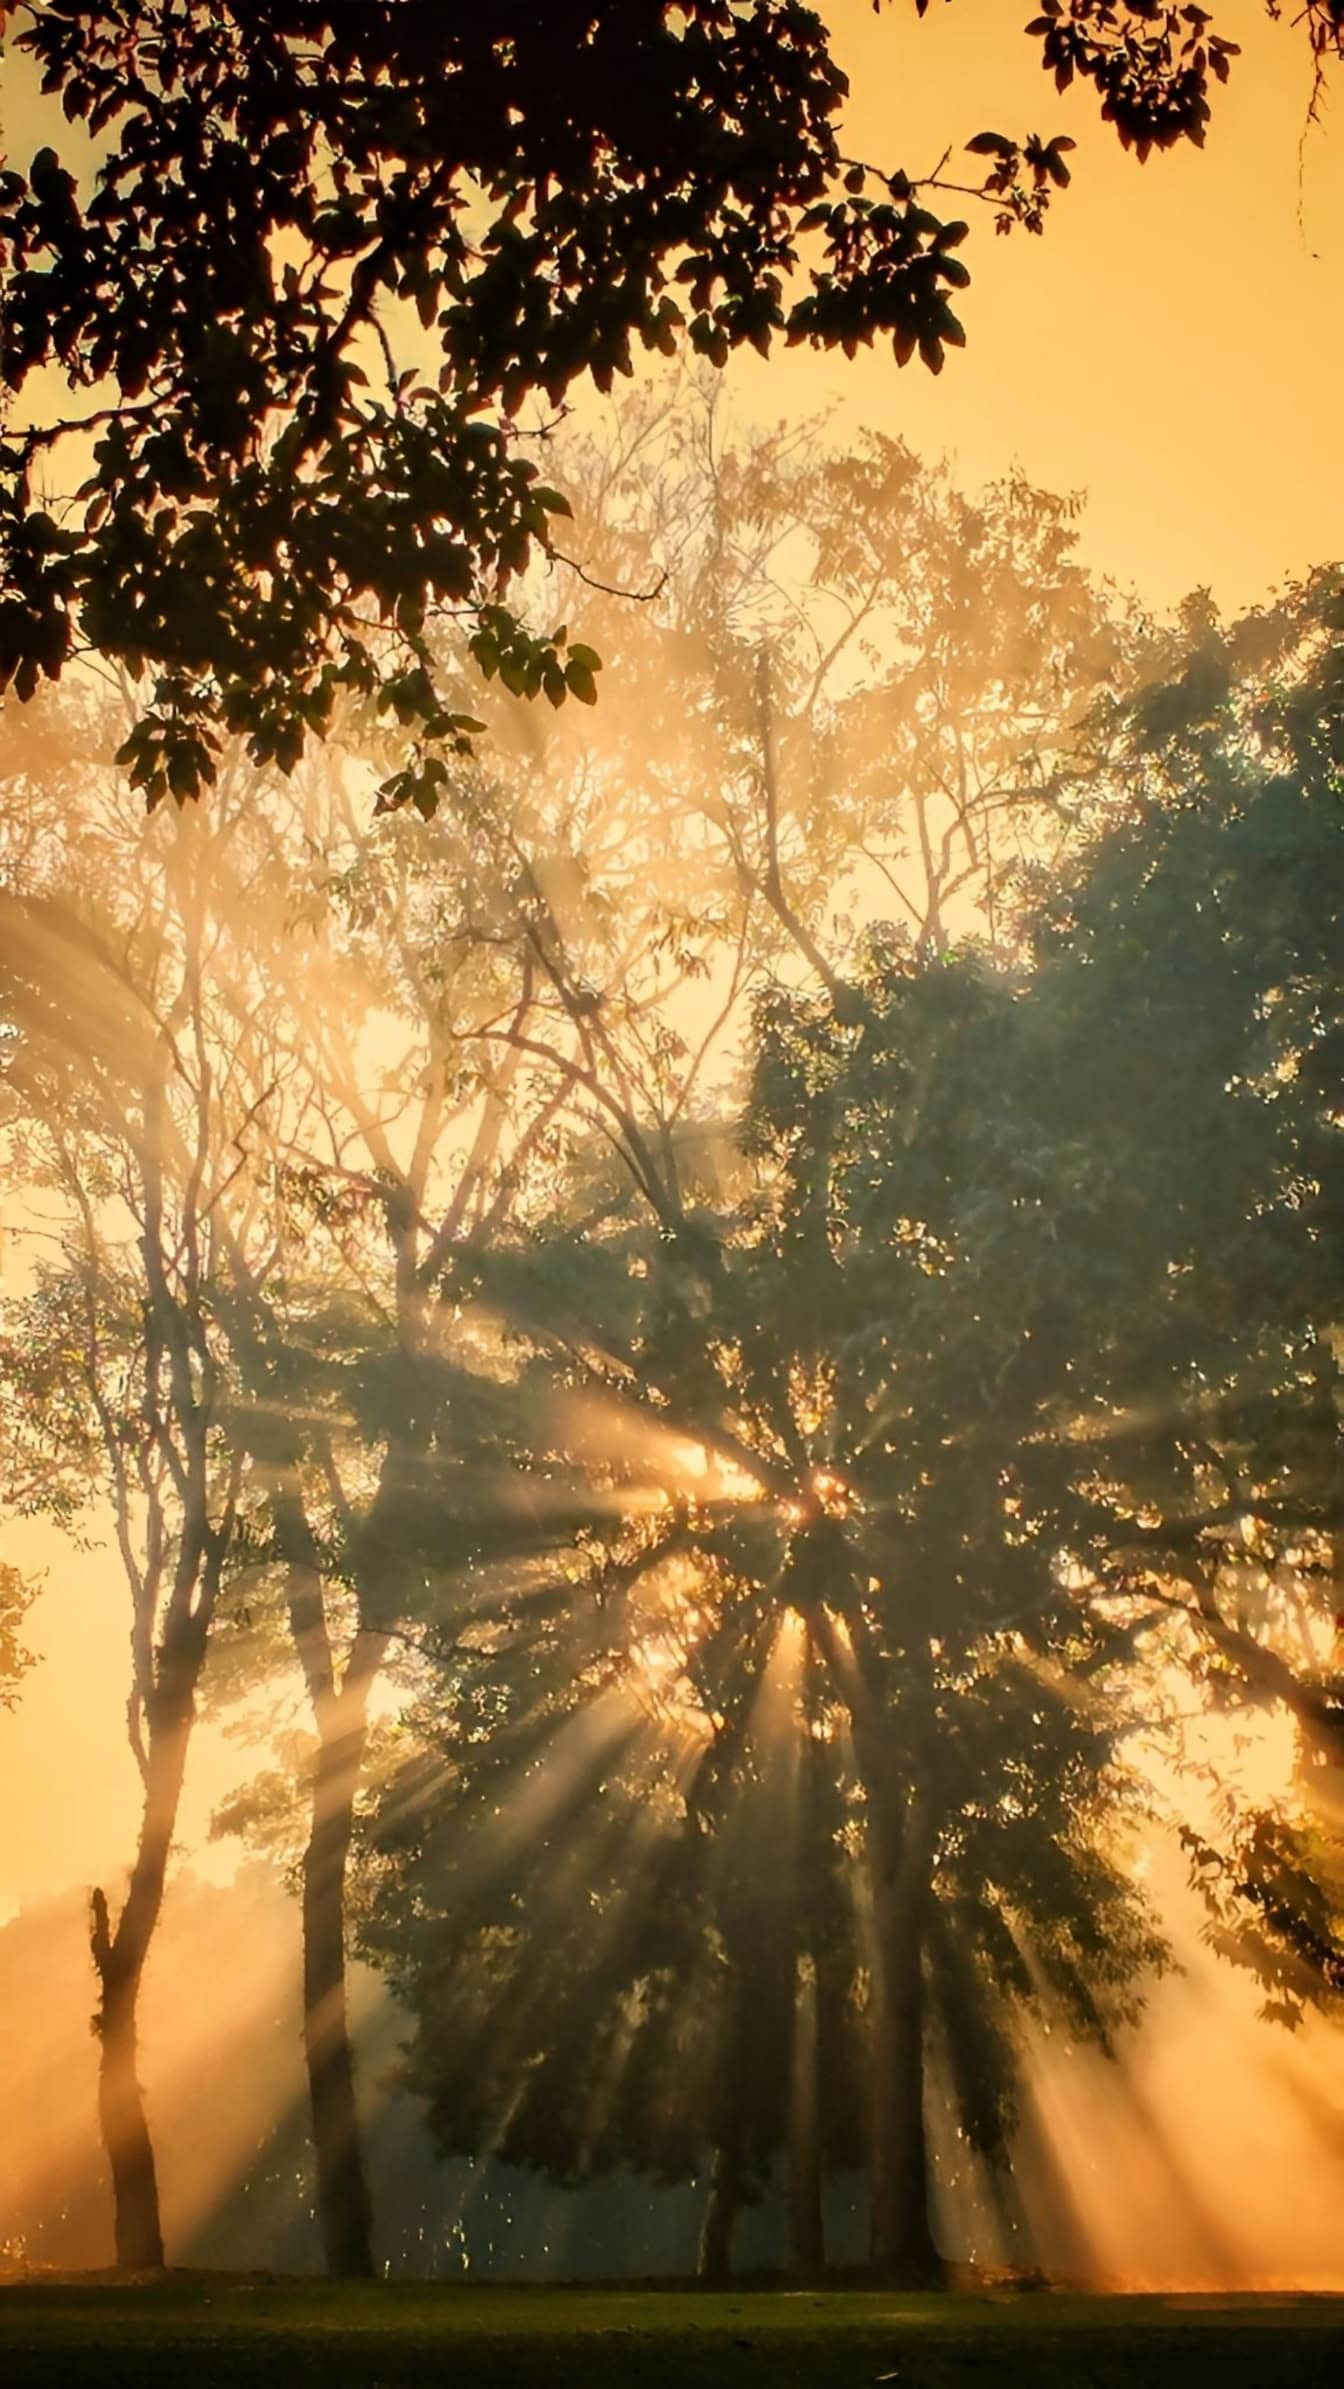 Härliga dimmiga solstrålar mellan träden vid sommarsolnedgången